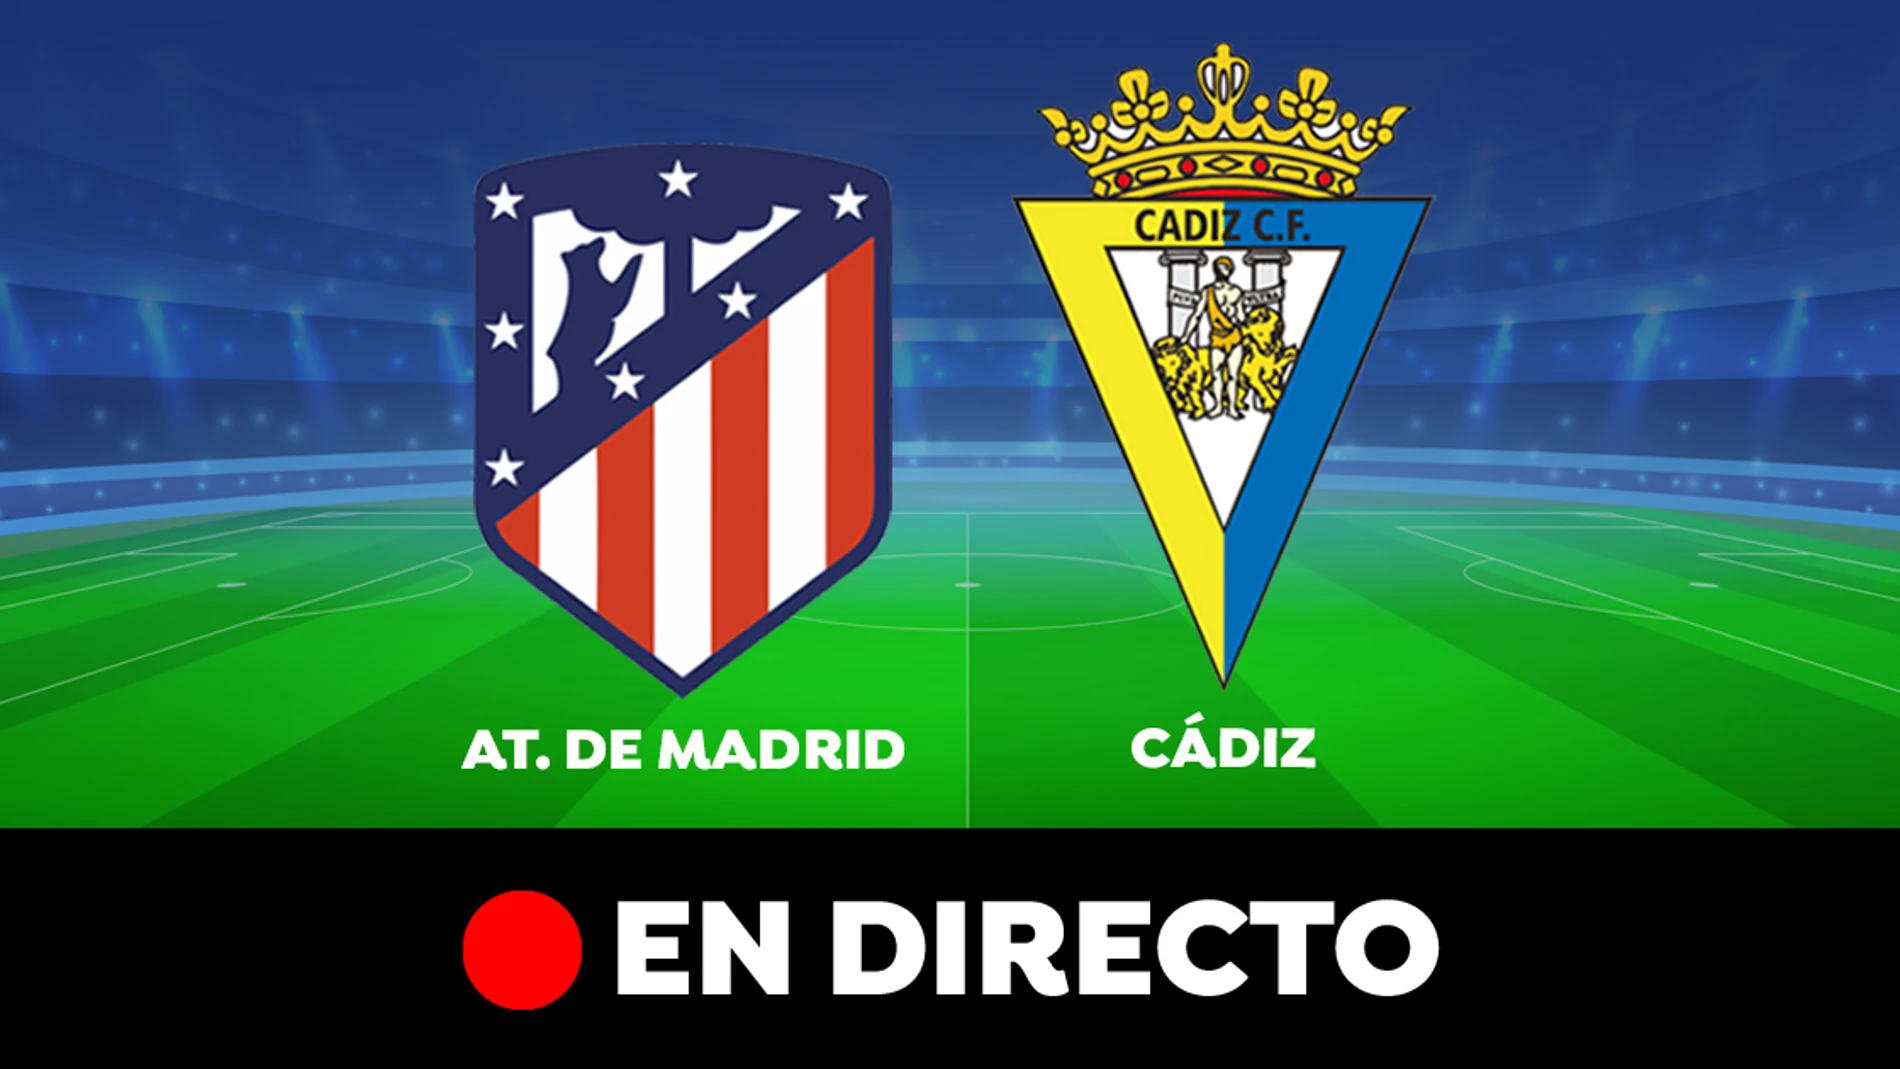 Atlético de Madrid - Cádiz: partido de Liga Santander, en directo